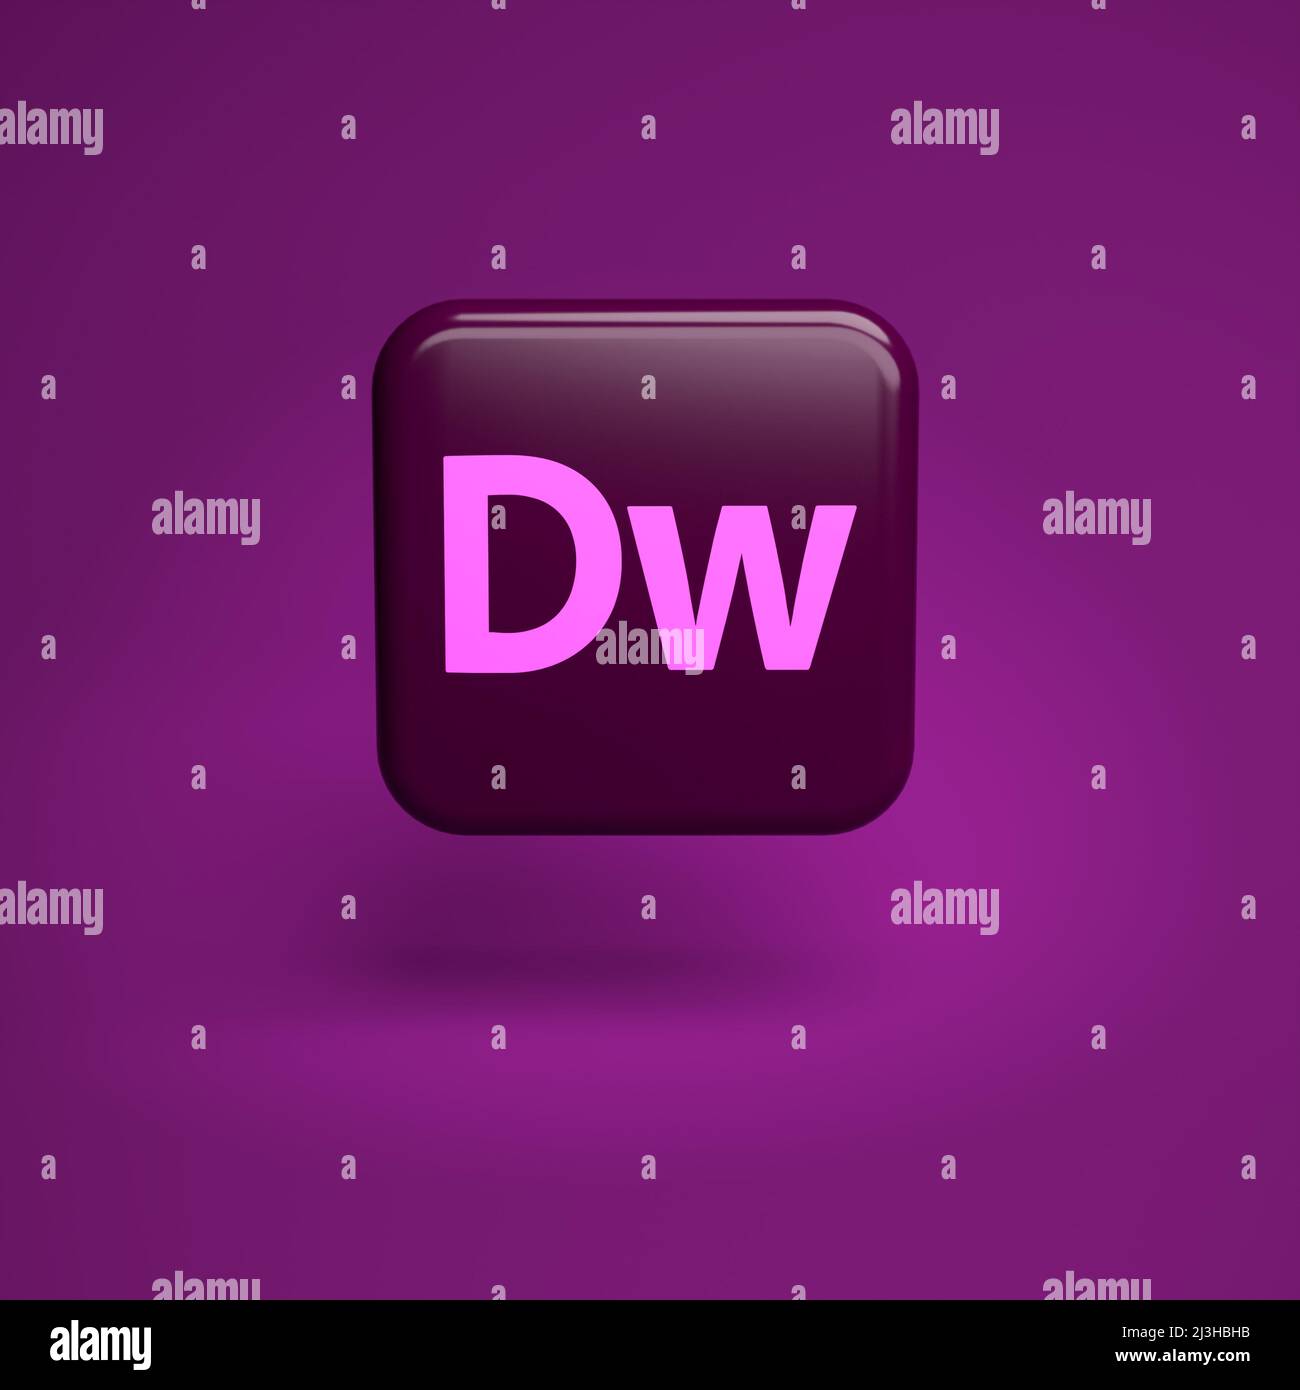 Adobe Dreamweaver: Với Adobe Dreamweaver, bạn có thể sản xuất ra những trang web tuyệt đẹp chỉ trong vài phút. Đó là một phần mềm mạnh mẽ, tiện lợi và dễ sử dụng để bạn có thể tạo ra những trang web chuyên nghiệp.